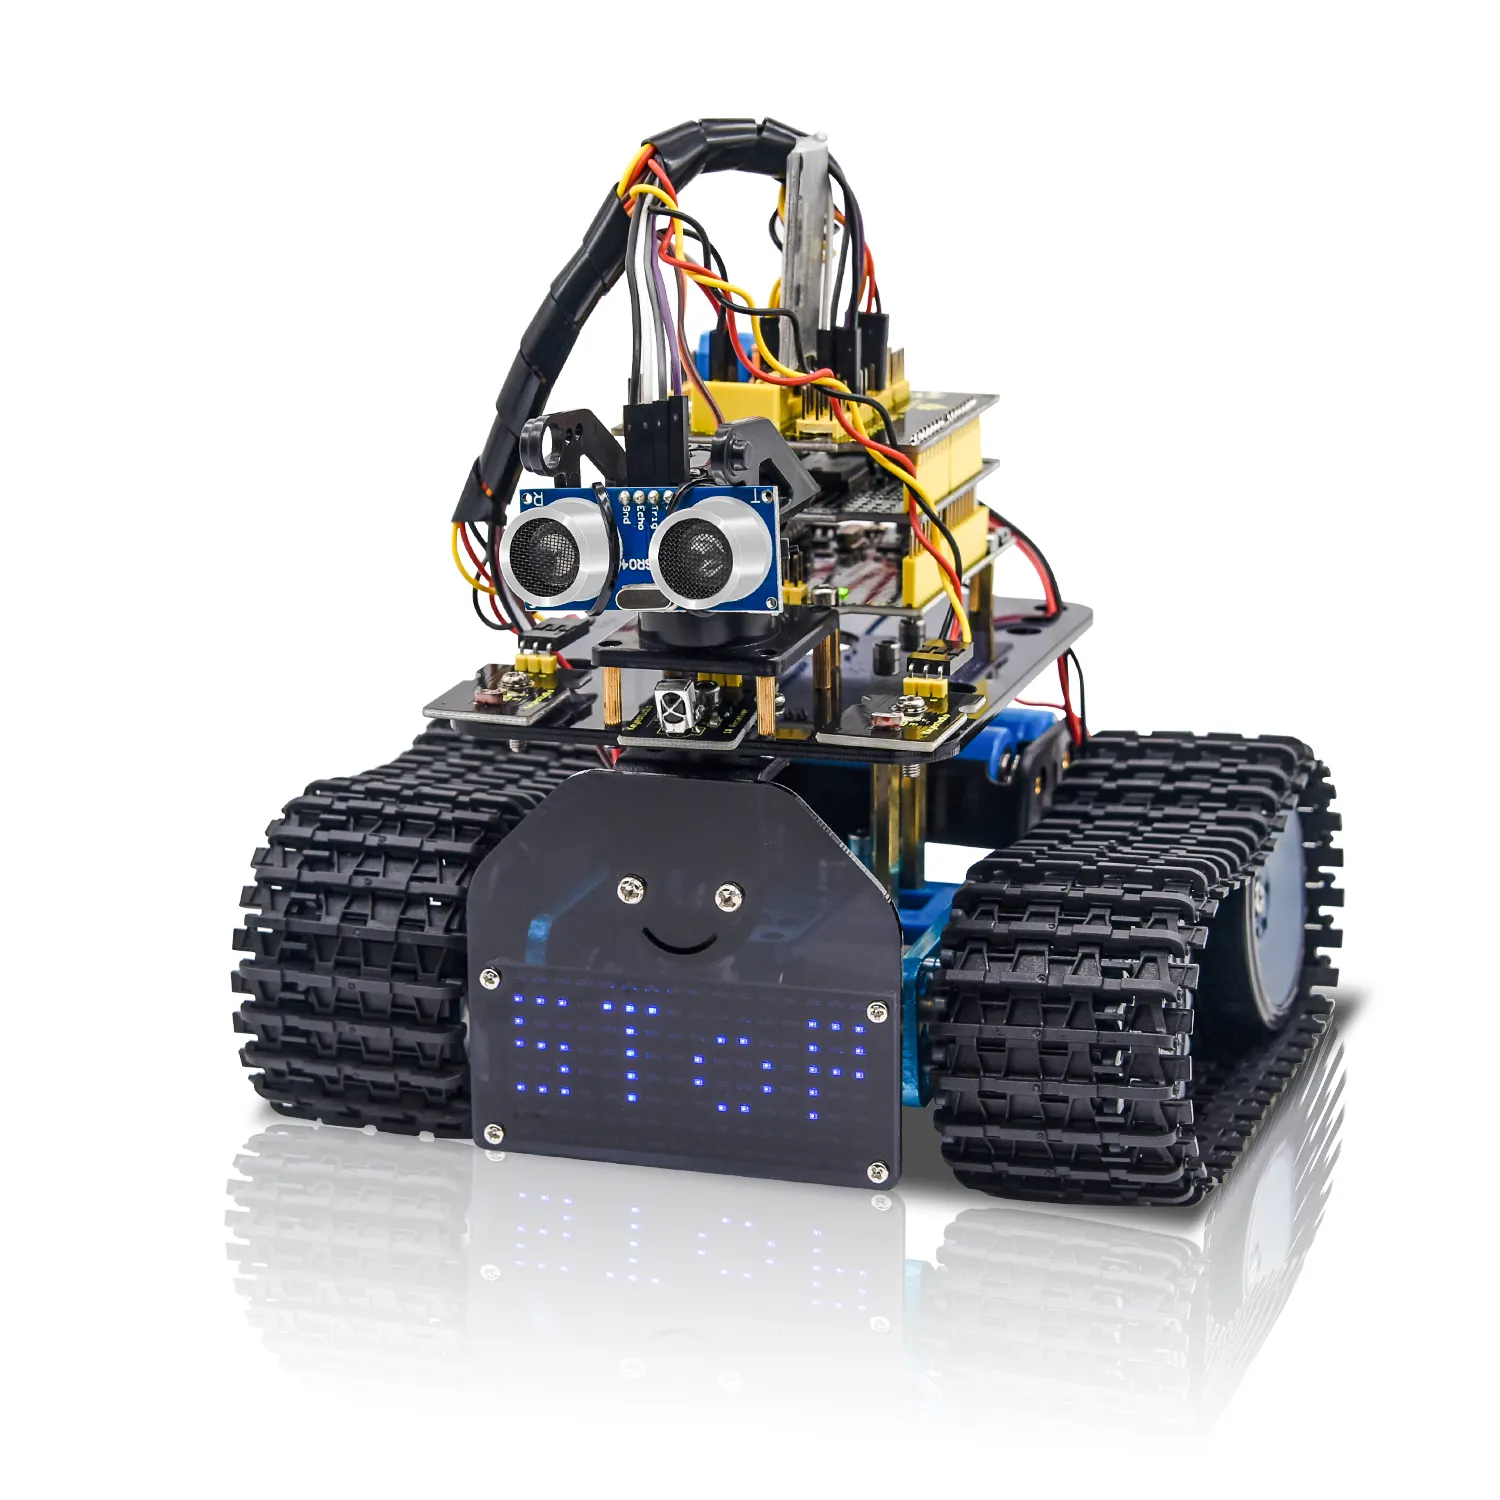 Oem Keyestudio Diy Mini Tank V2.0 Smart Bt Robot Carkit Stem Robot Kit Voor Arduino